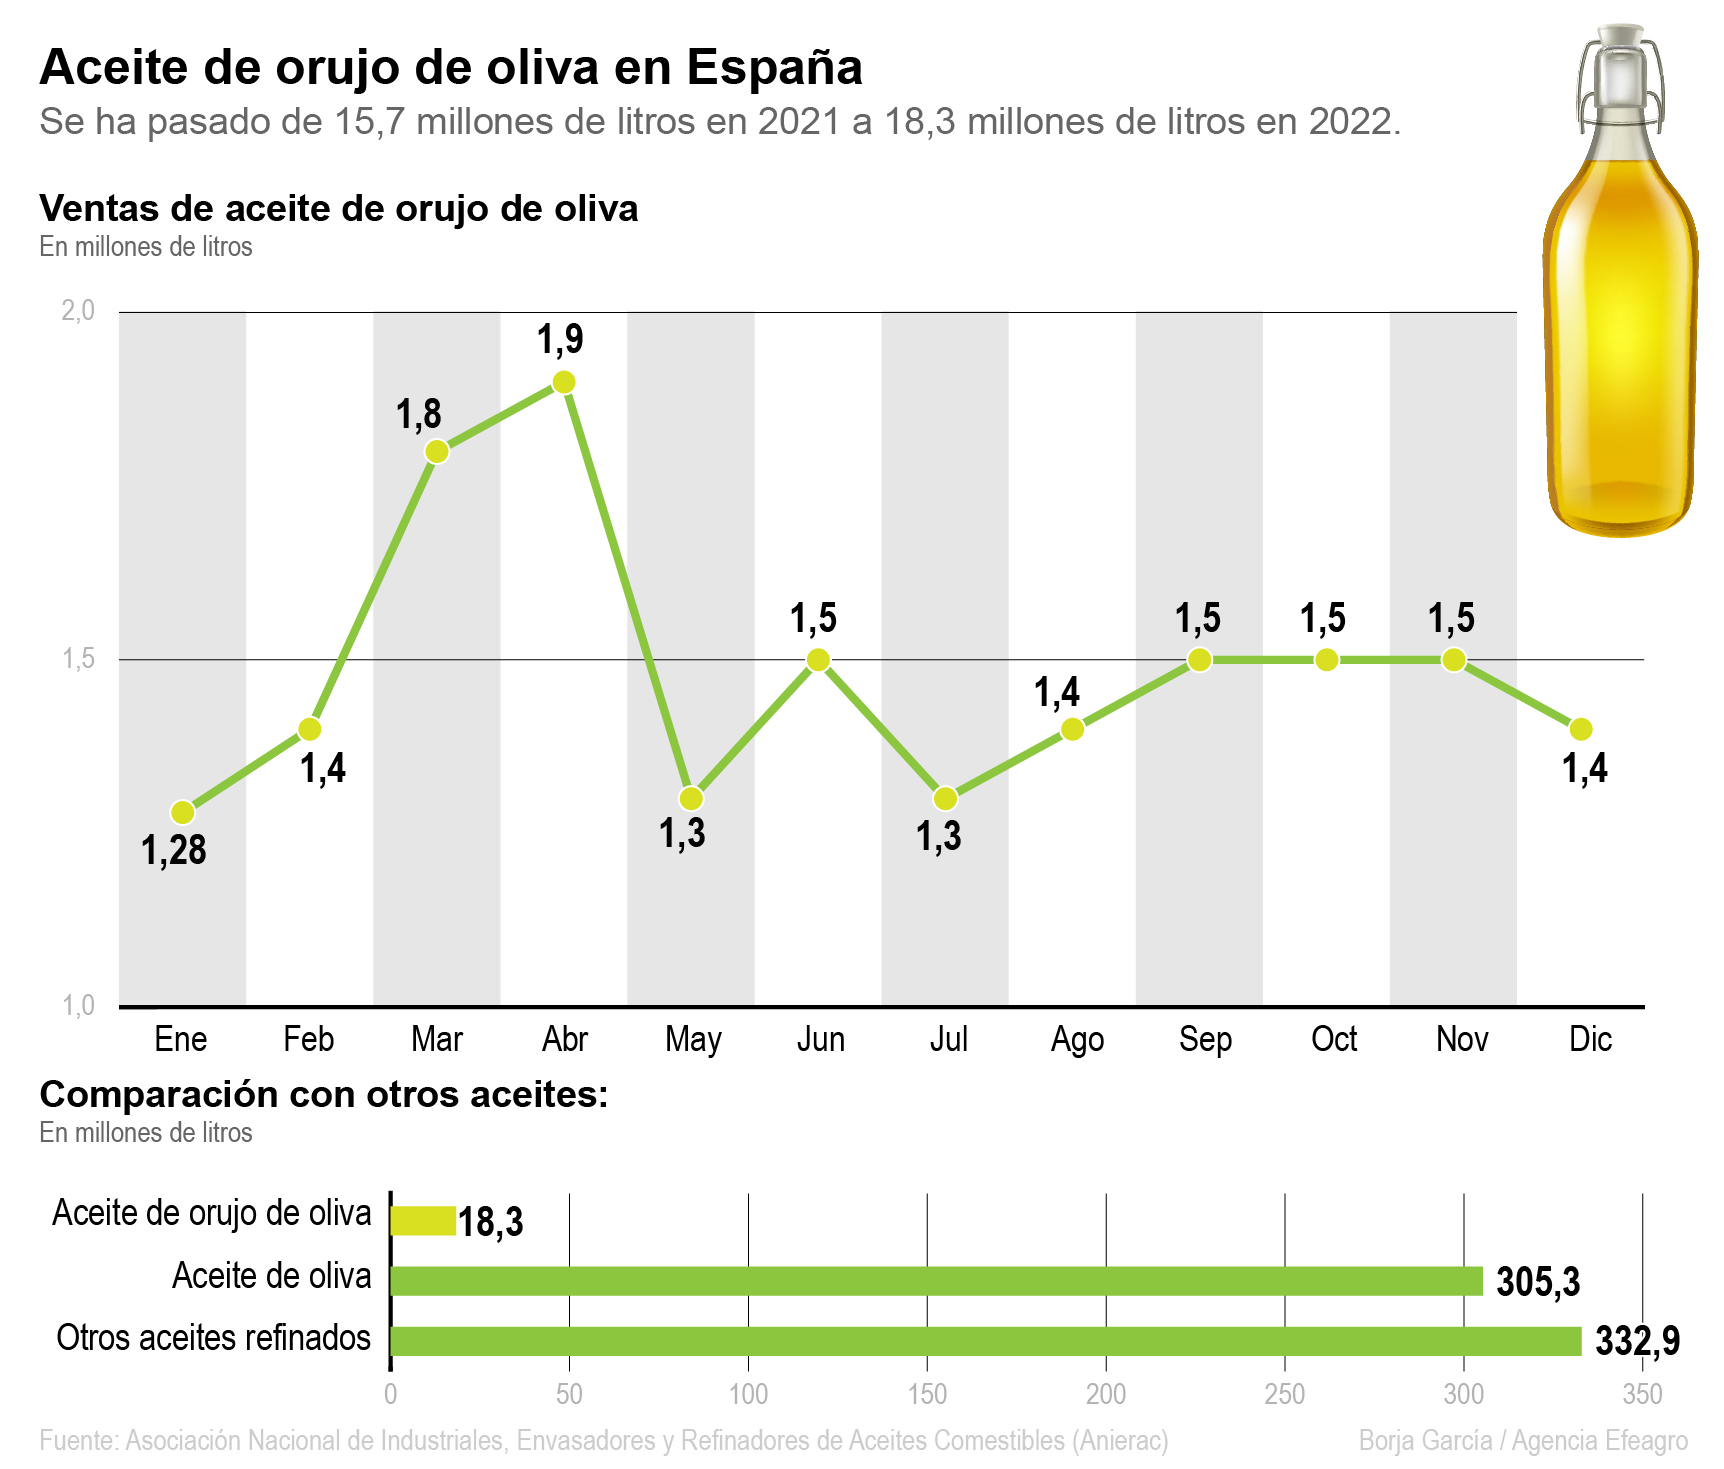 Ventas de aceite de orujo en España. Efeagro/Borja García